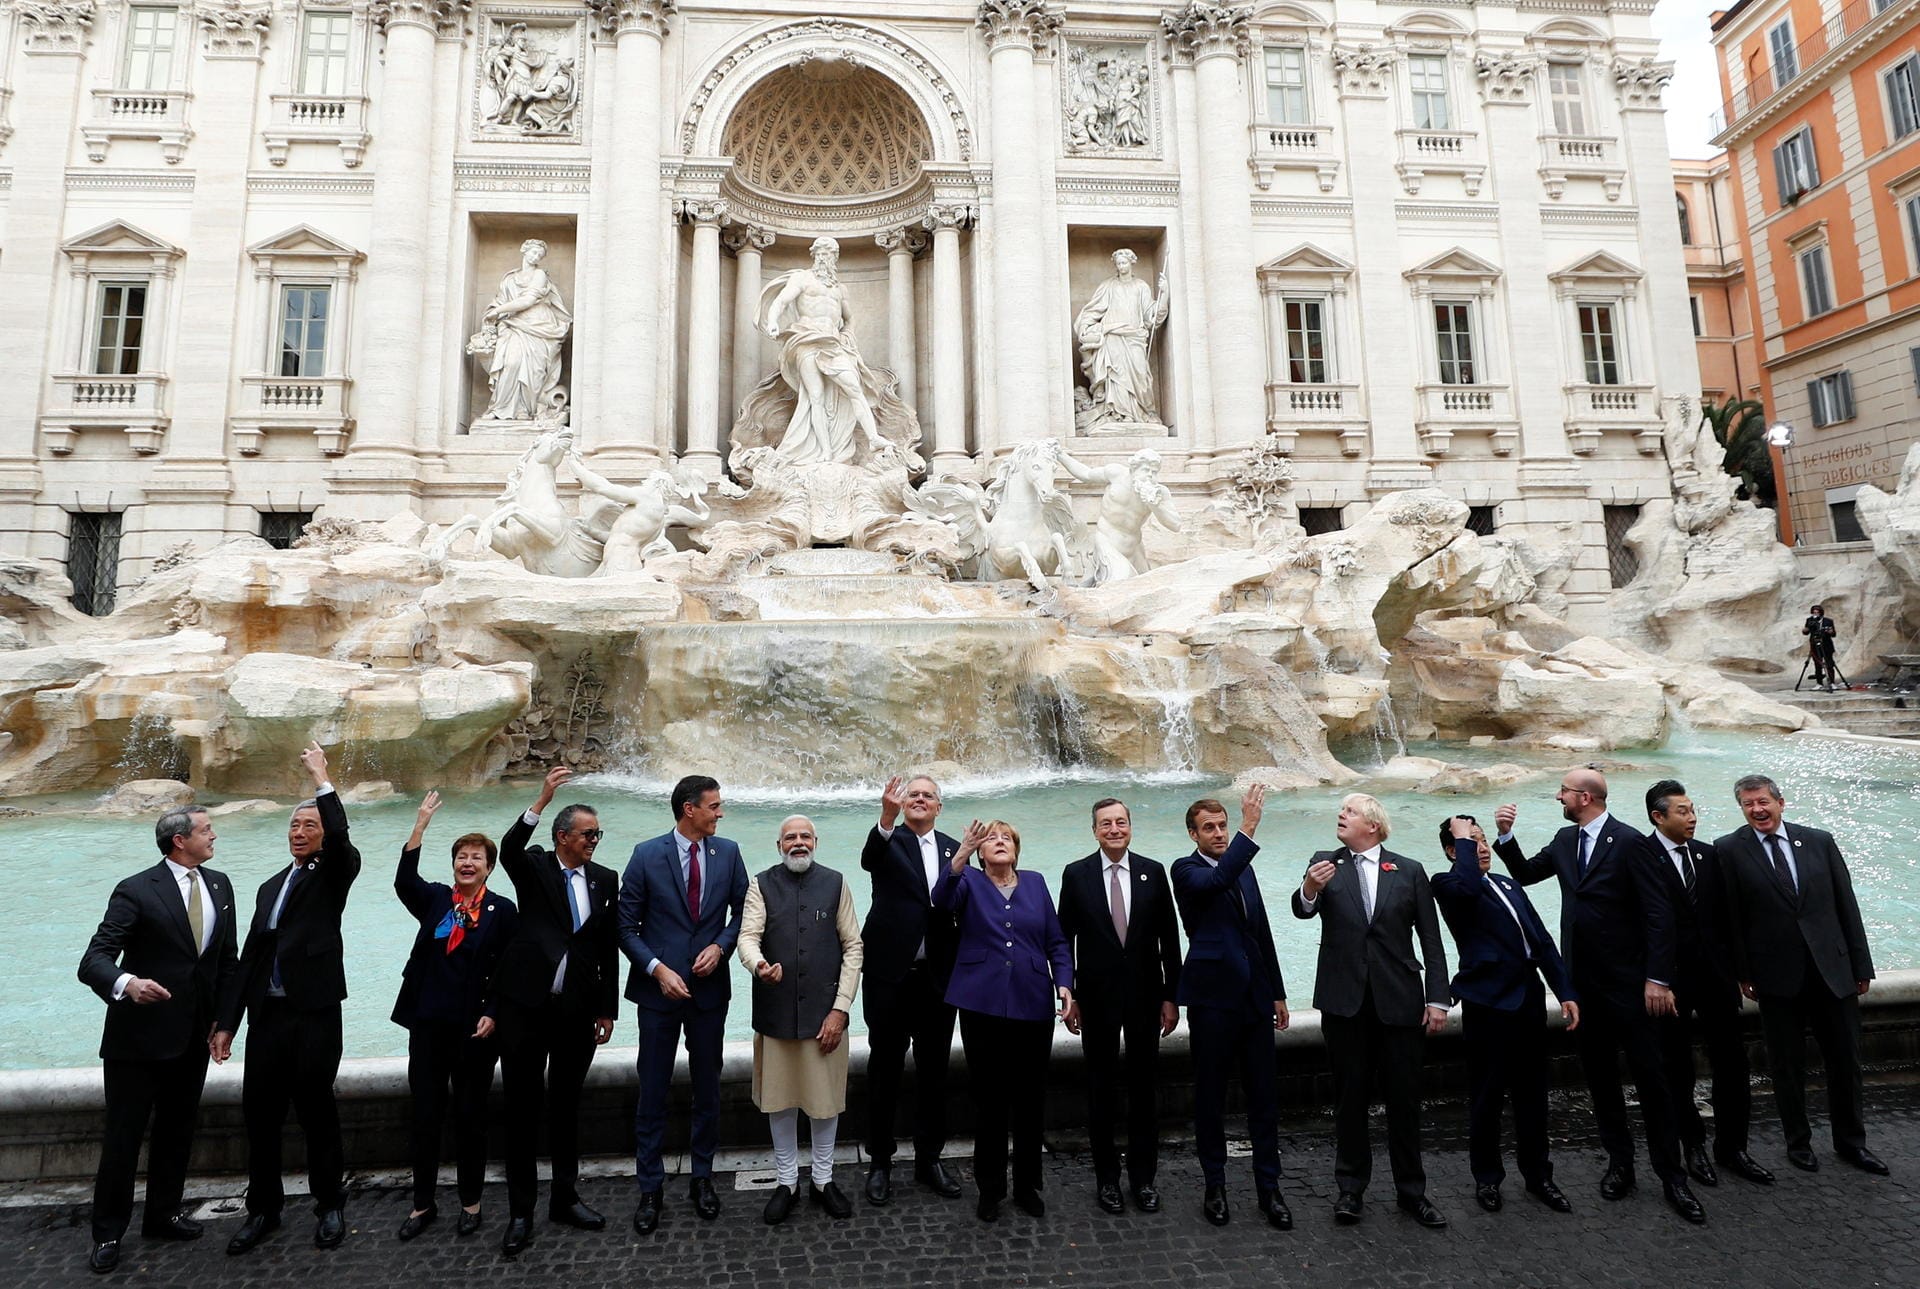 Gruppenfoto der G20-Vertreter: Einer Legende zufolge soll es Glück bringen, Münzen über die rechte Schulter in den Trevi-Brunnen zu werfen.